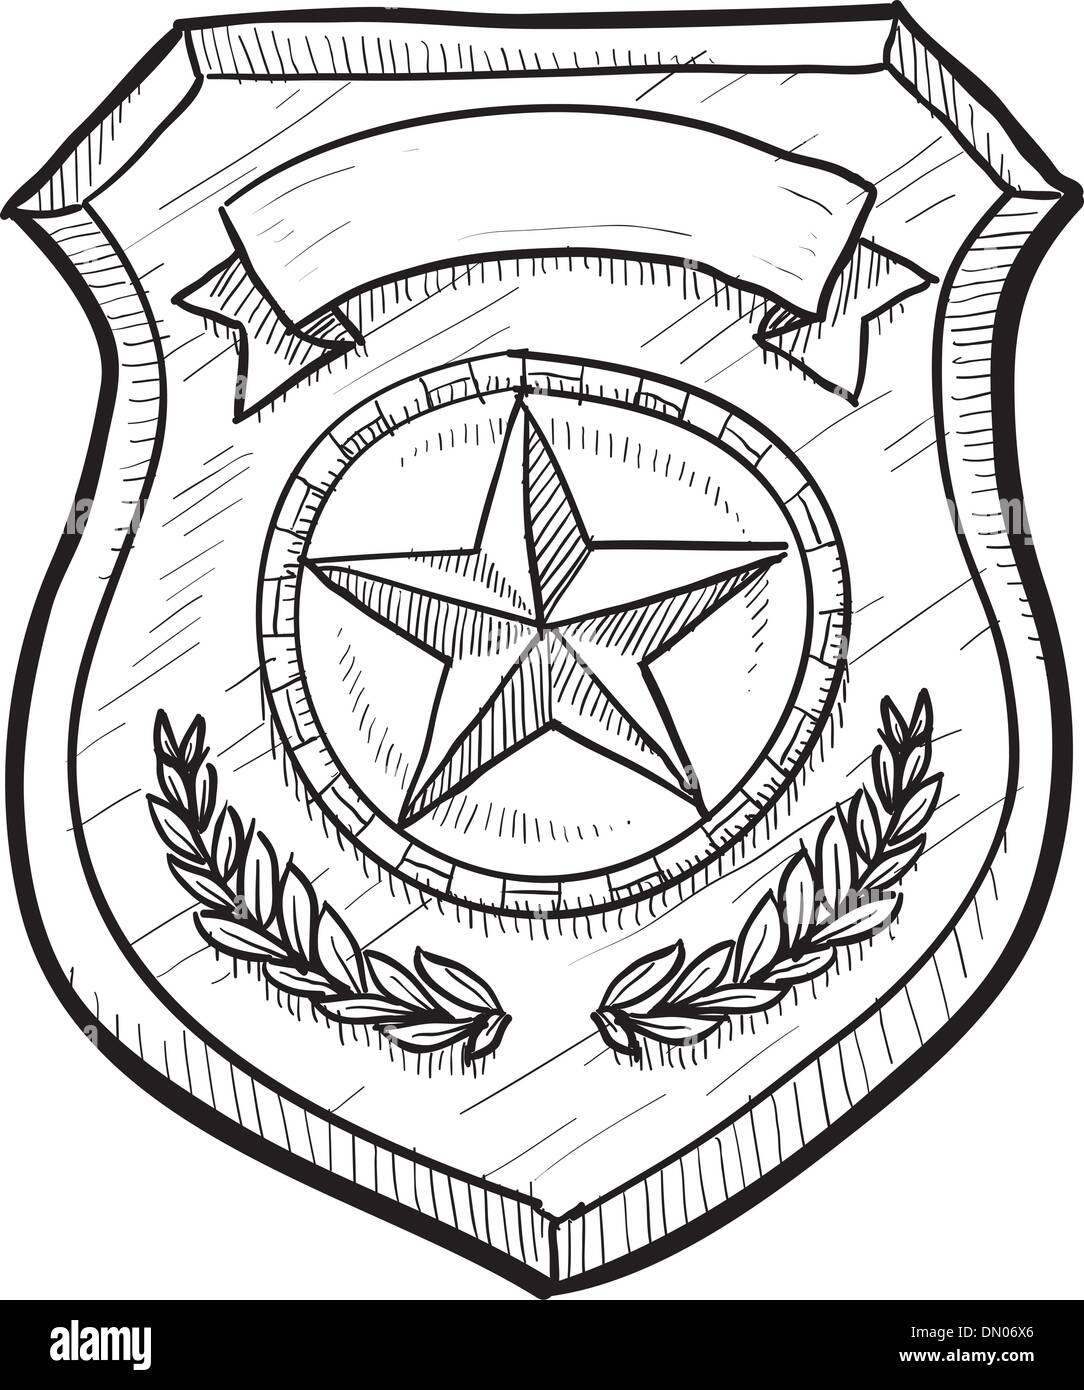 Imagen De Icono De Placa De Policía De Bronce, Ilustración Vectorial  Ilustraciones svg, vectoriales, clip art vectorizado libre de derechos.  Image 70572527